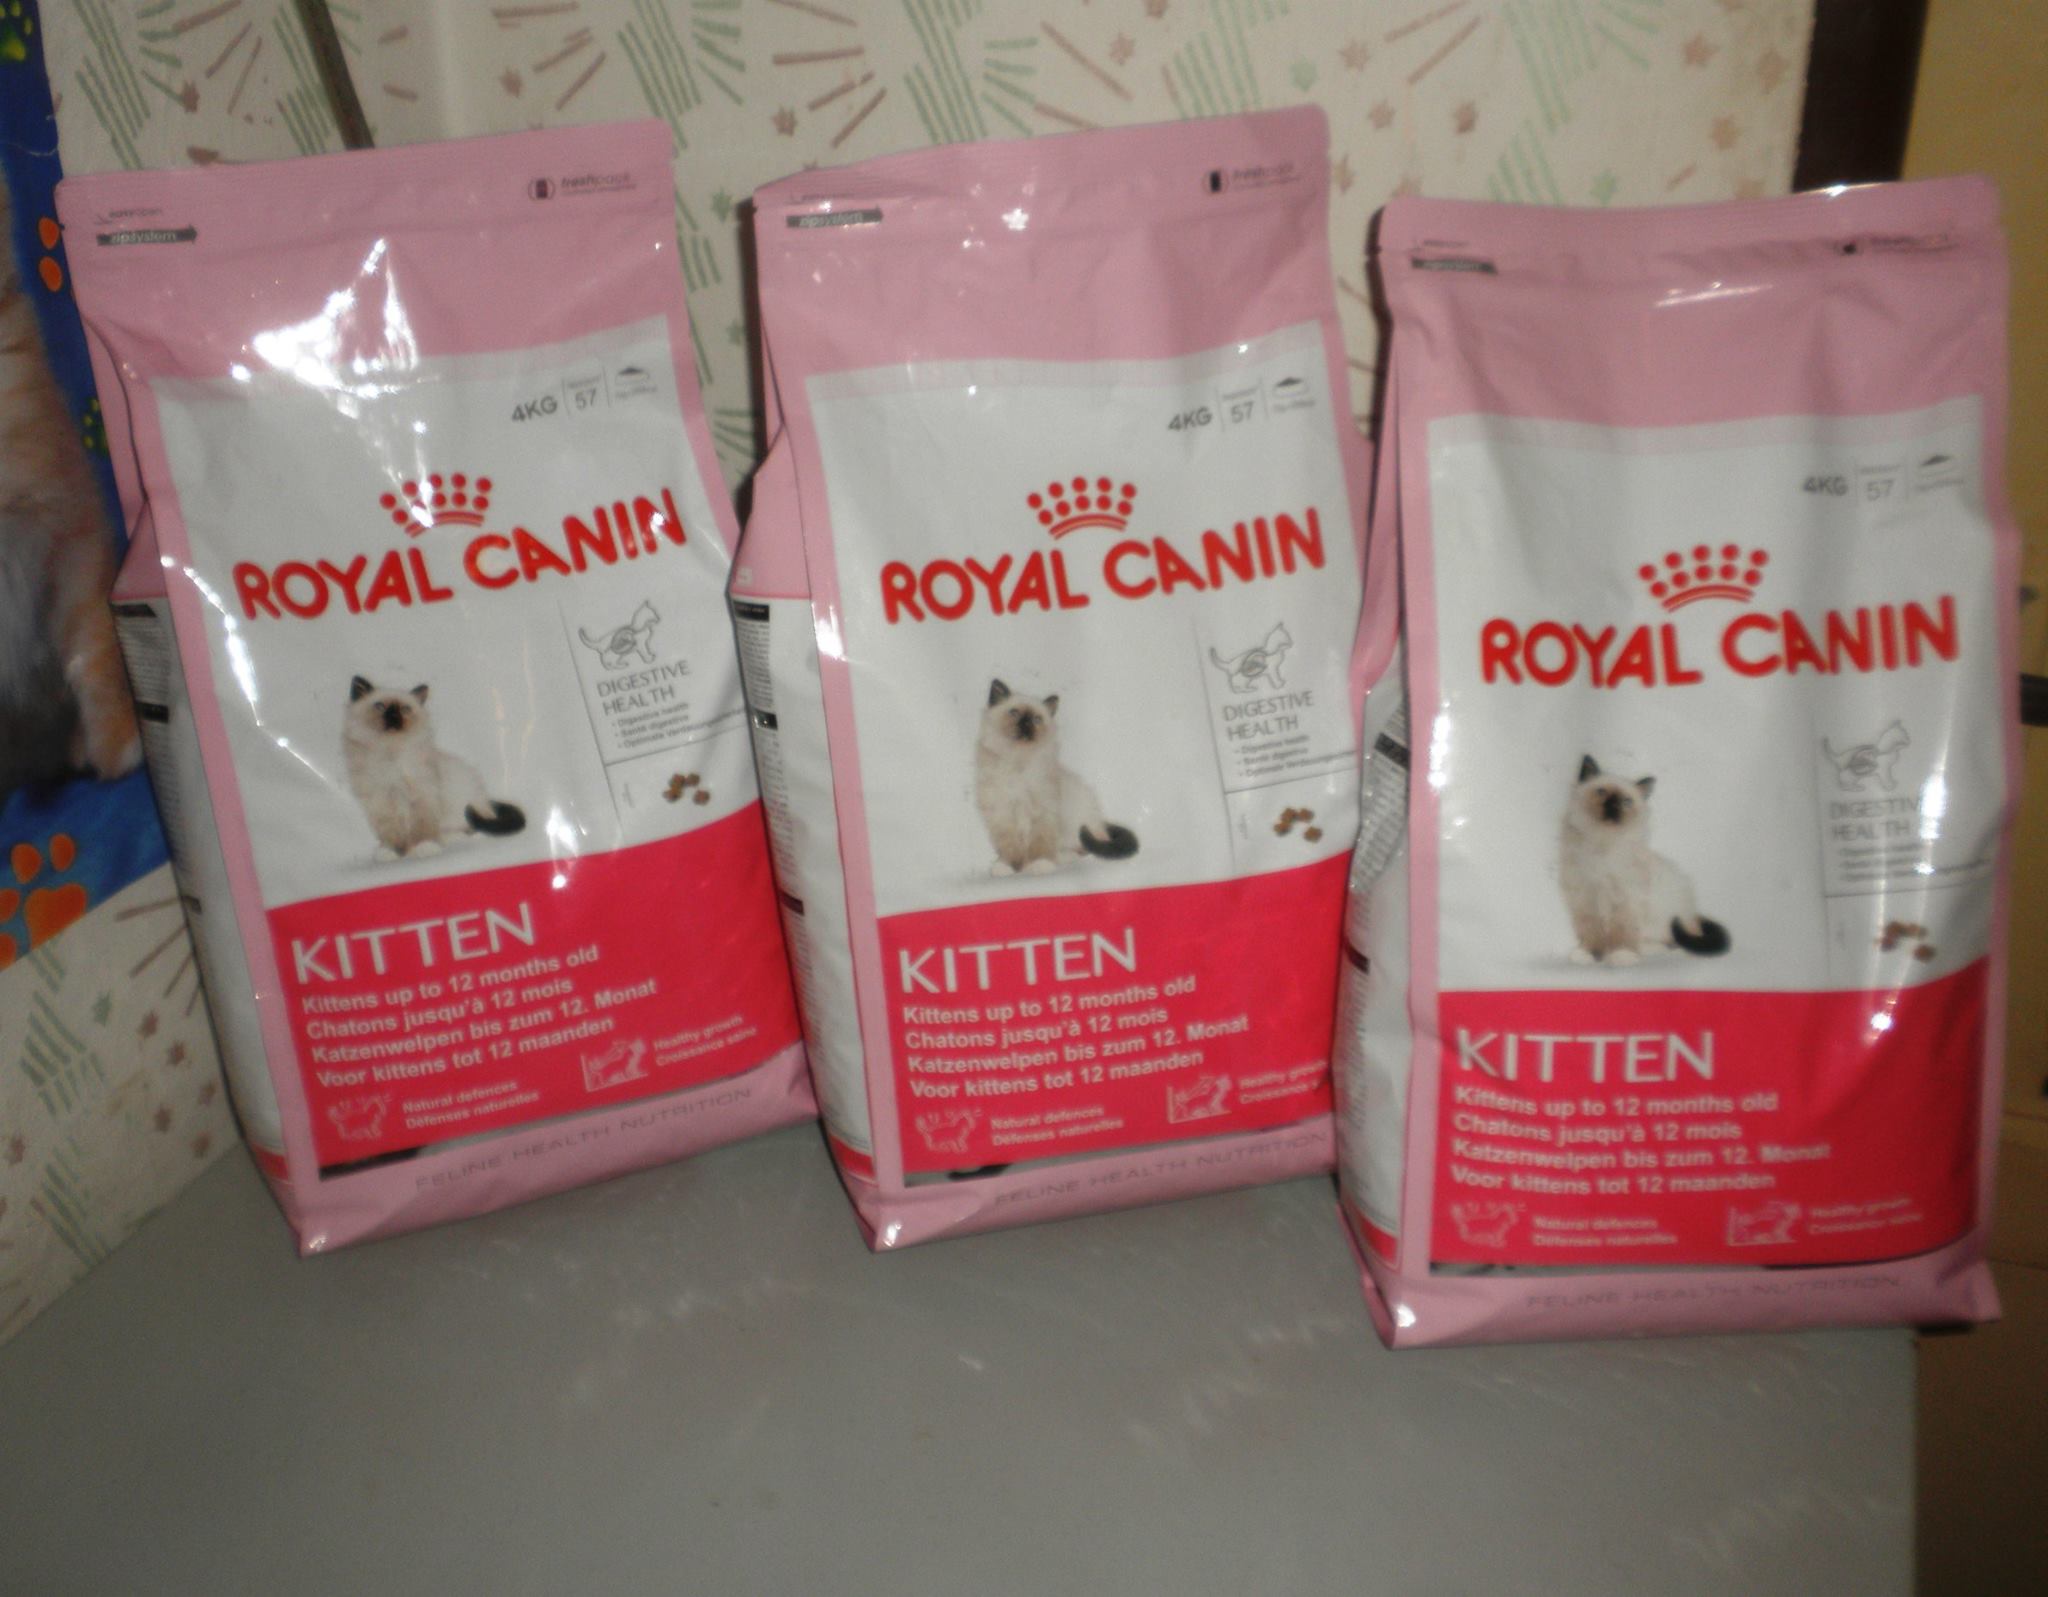 4 kg balení Royal Canin kitten mají jako dárek tři kočičky , zakoupeno tedy samozřejmě třikrát.